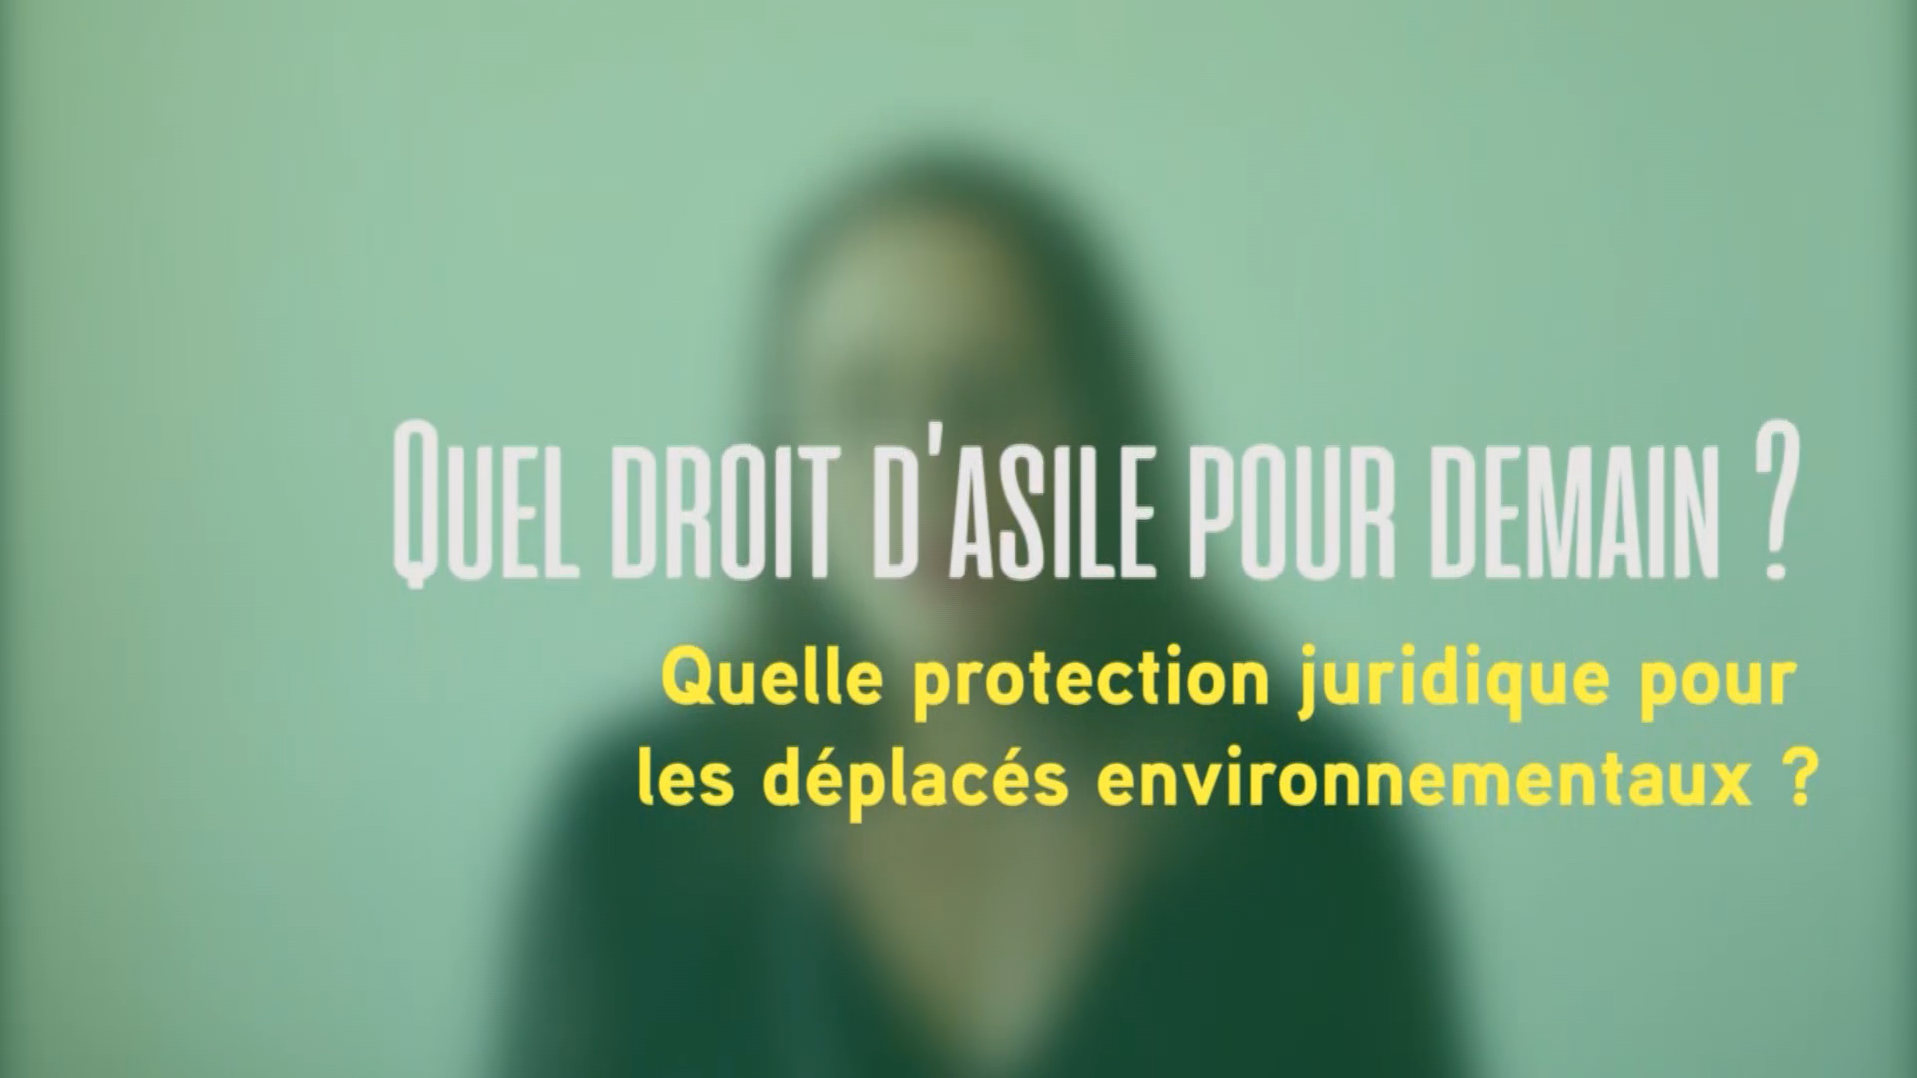 Bérangère Taxil "Quelle protection juridique pour les déplacés environnementaux ?"